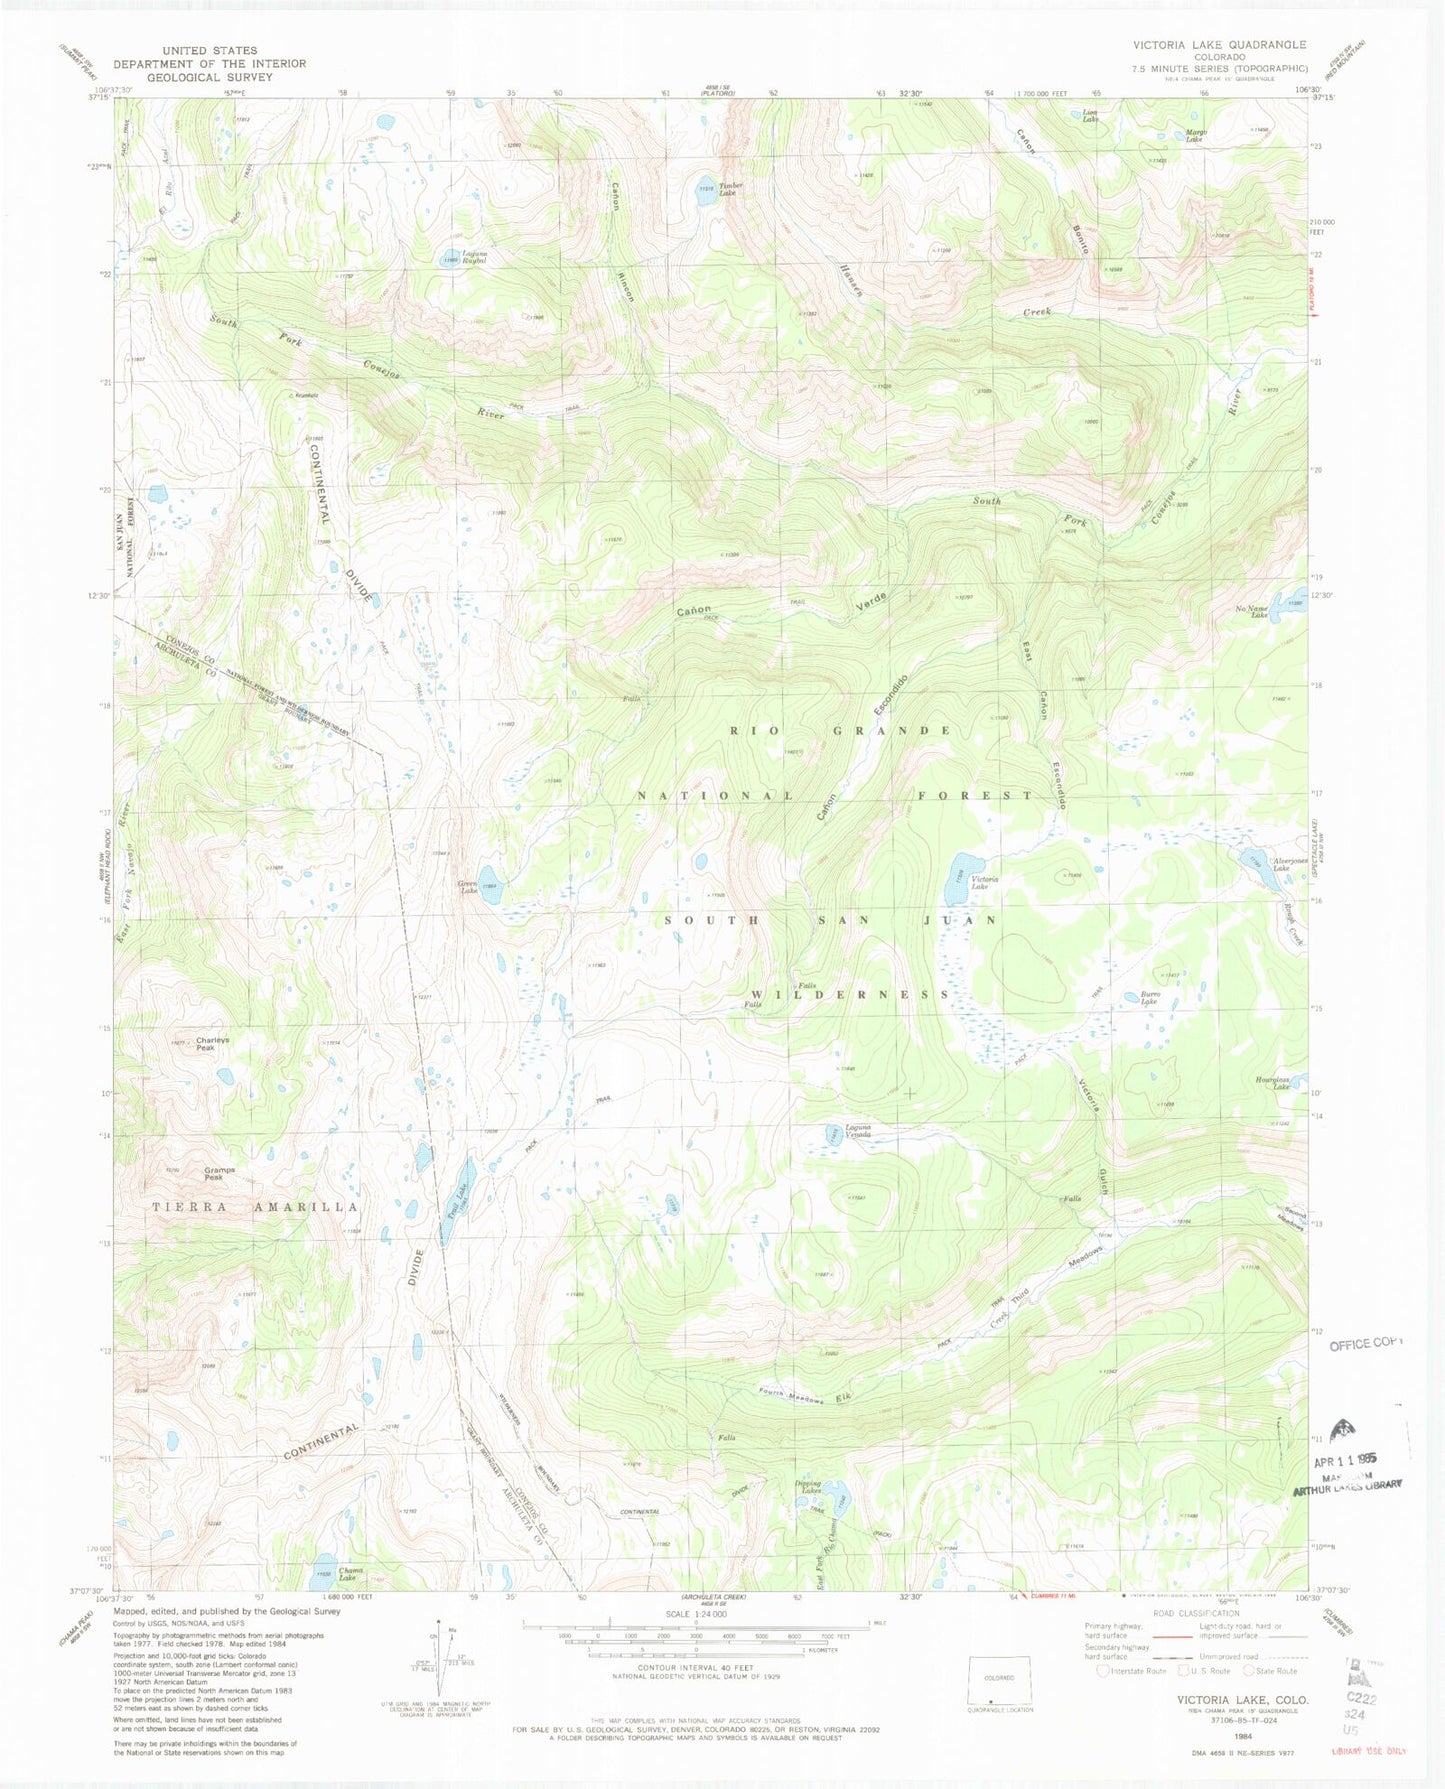 USGS Classic Victoria Lake Colorado 7.5'x7.5' Topo Map Image